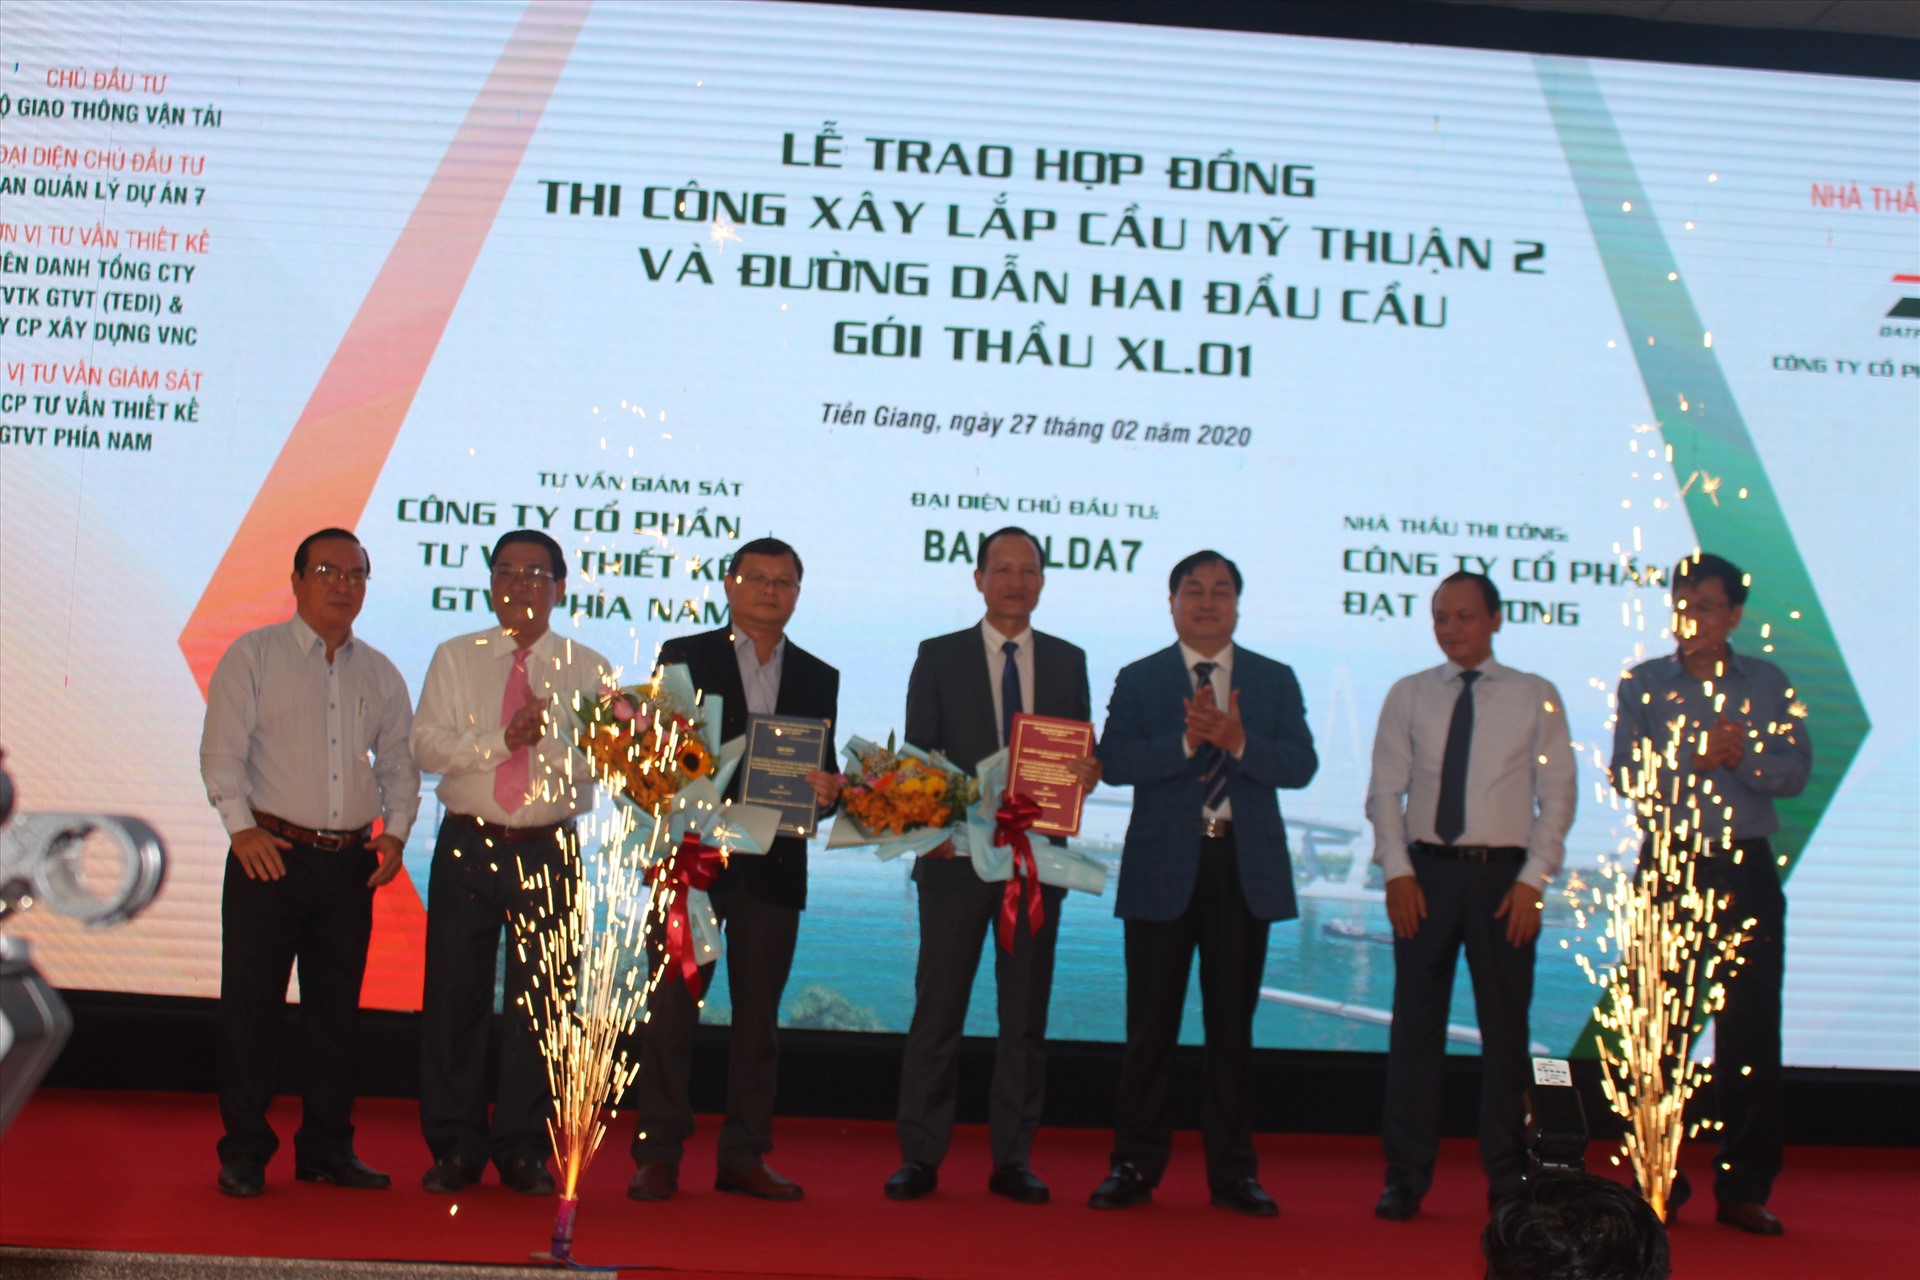 Triển khai dự án cầu Mỹ Thuận 2 và đường dẫn lên cầu hôm tháng 2.2020. Ảnh: K.Q